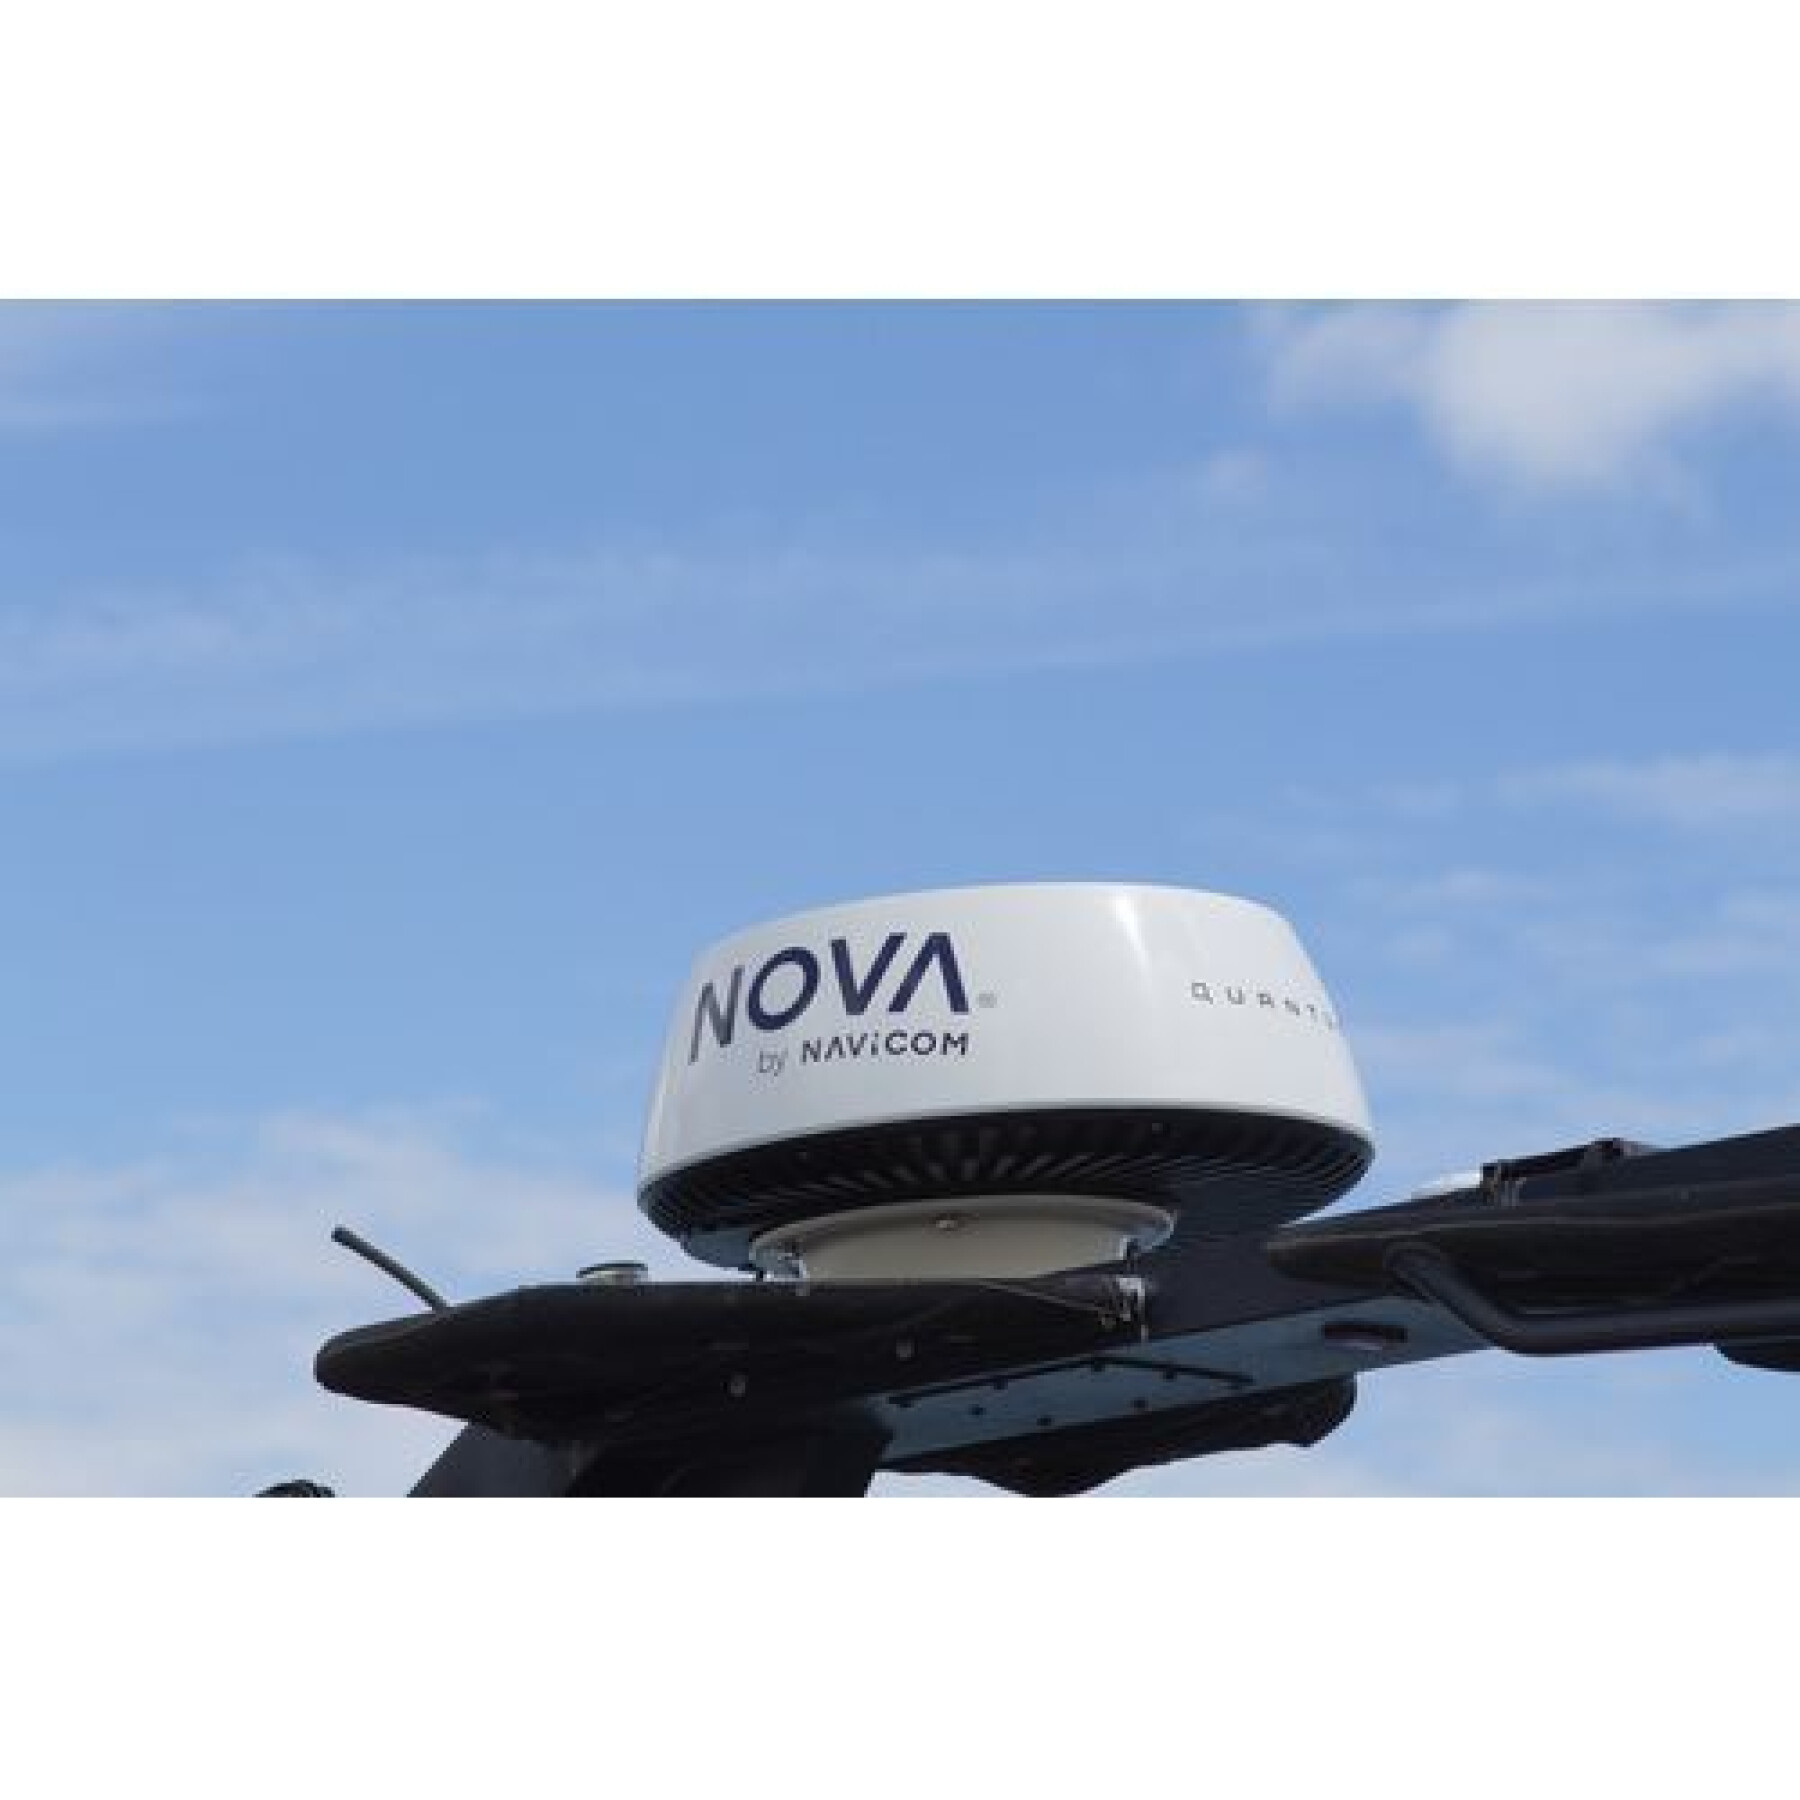 Radar pack + 10m cable for Nova